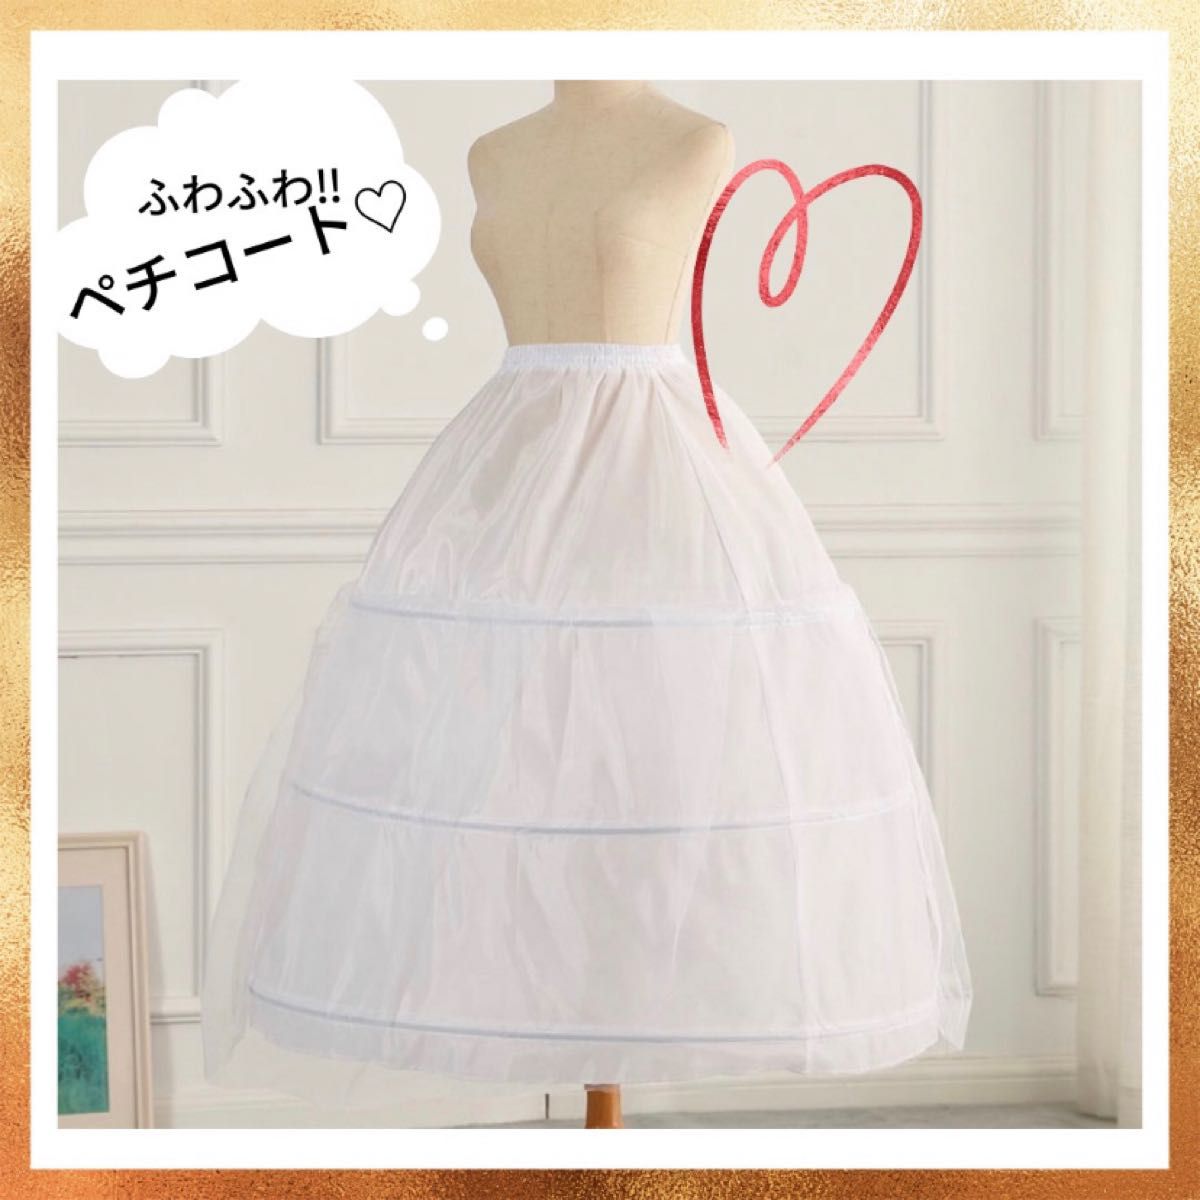 注目ブランドのギフト 3段チュール パニエ ホワイト 45cm 衣装 スカート ドレス ハロウィン